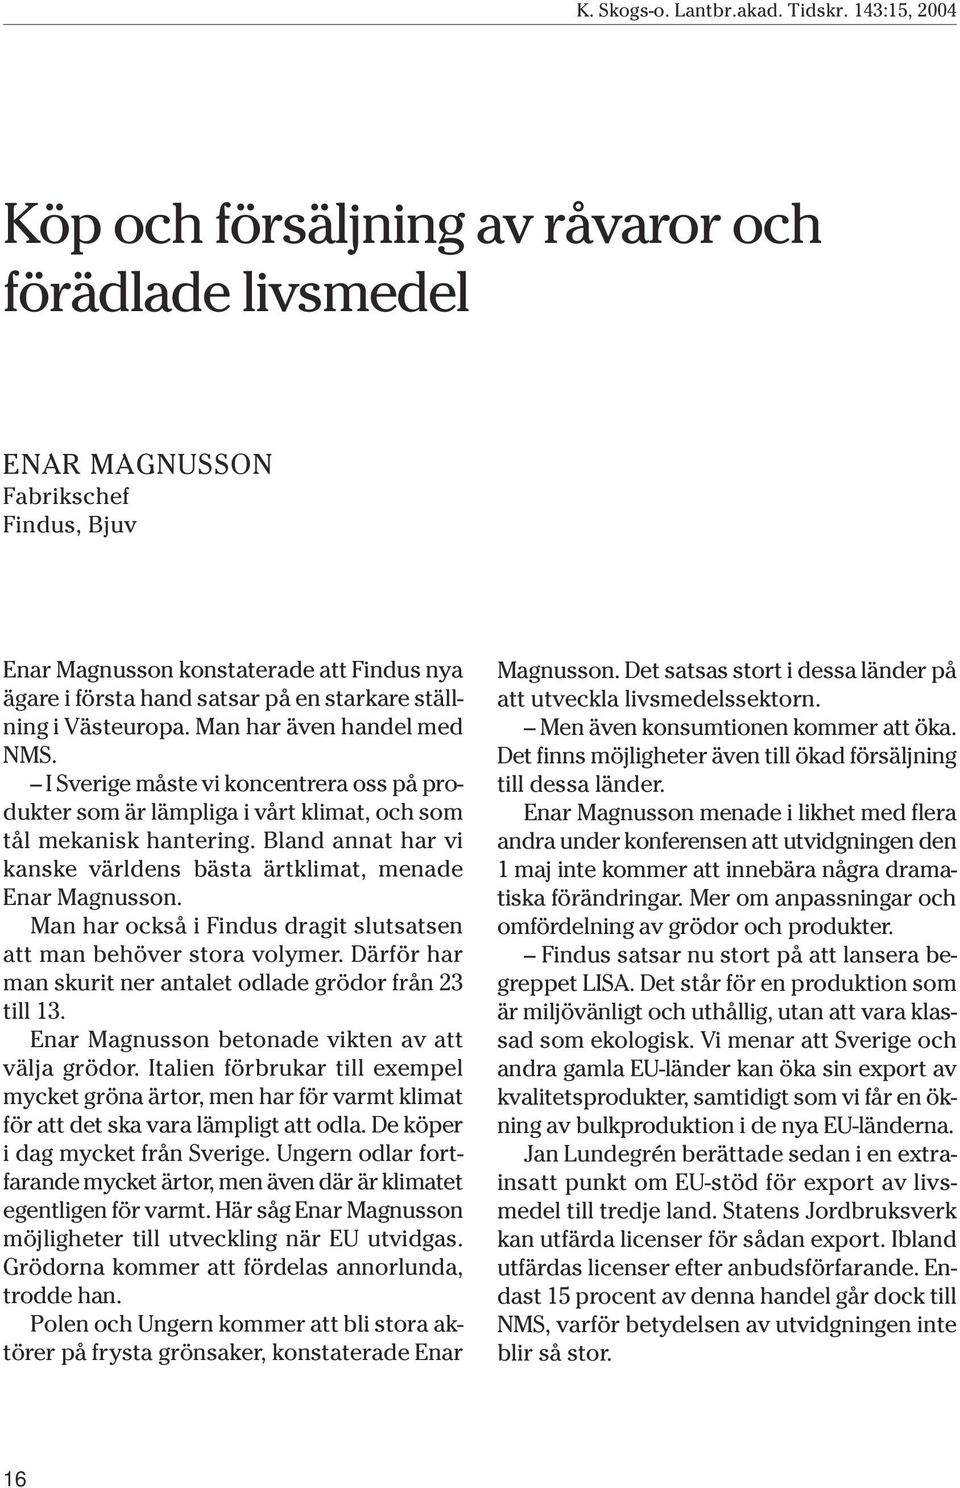 Bland annat har vi kanske världens bästa ärtklimat, menade Enar Magnusson. Man har också i Findus dragit slutsatsen att man behöver stora volymer.